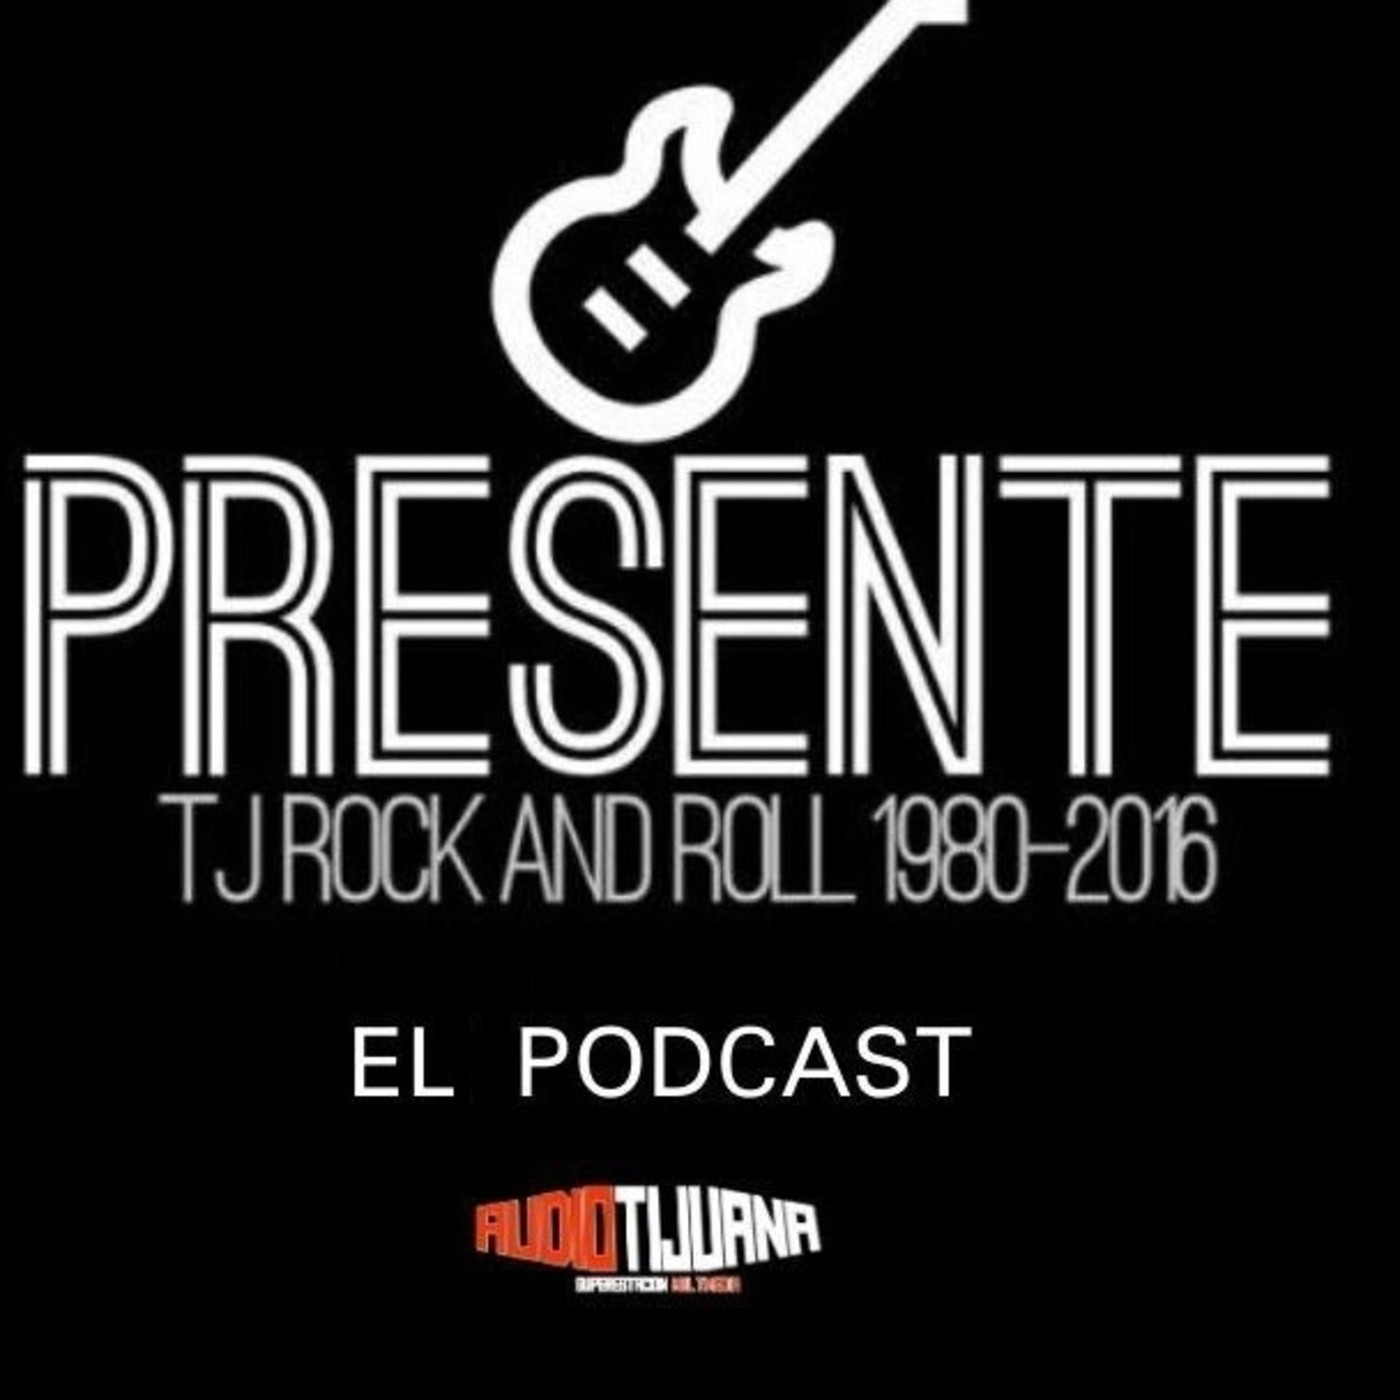 A highlight from PRESENTE EL PODCAST - EPISODIO 12: EL METAL (SEGUNDA PARTE)